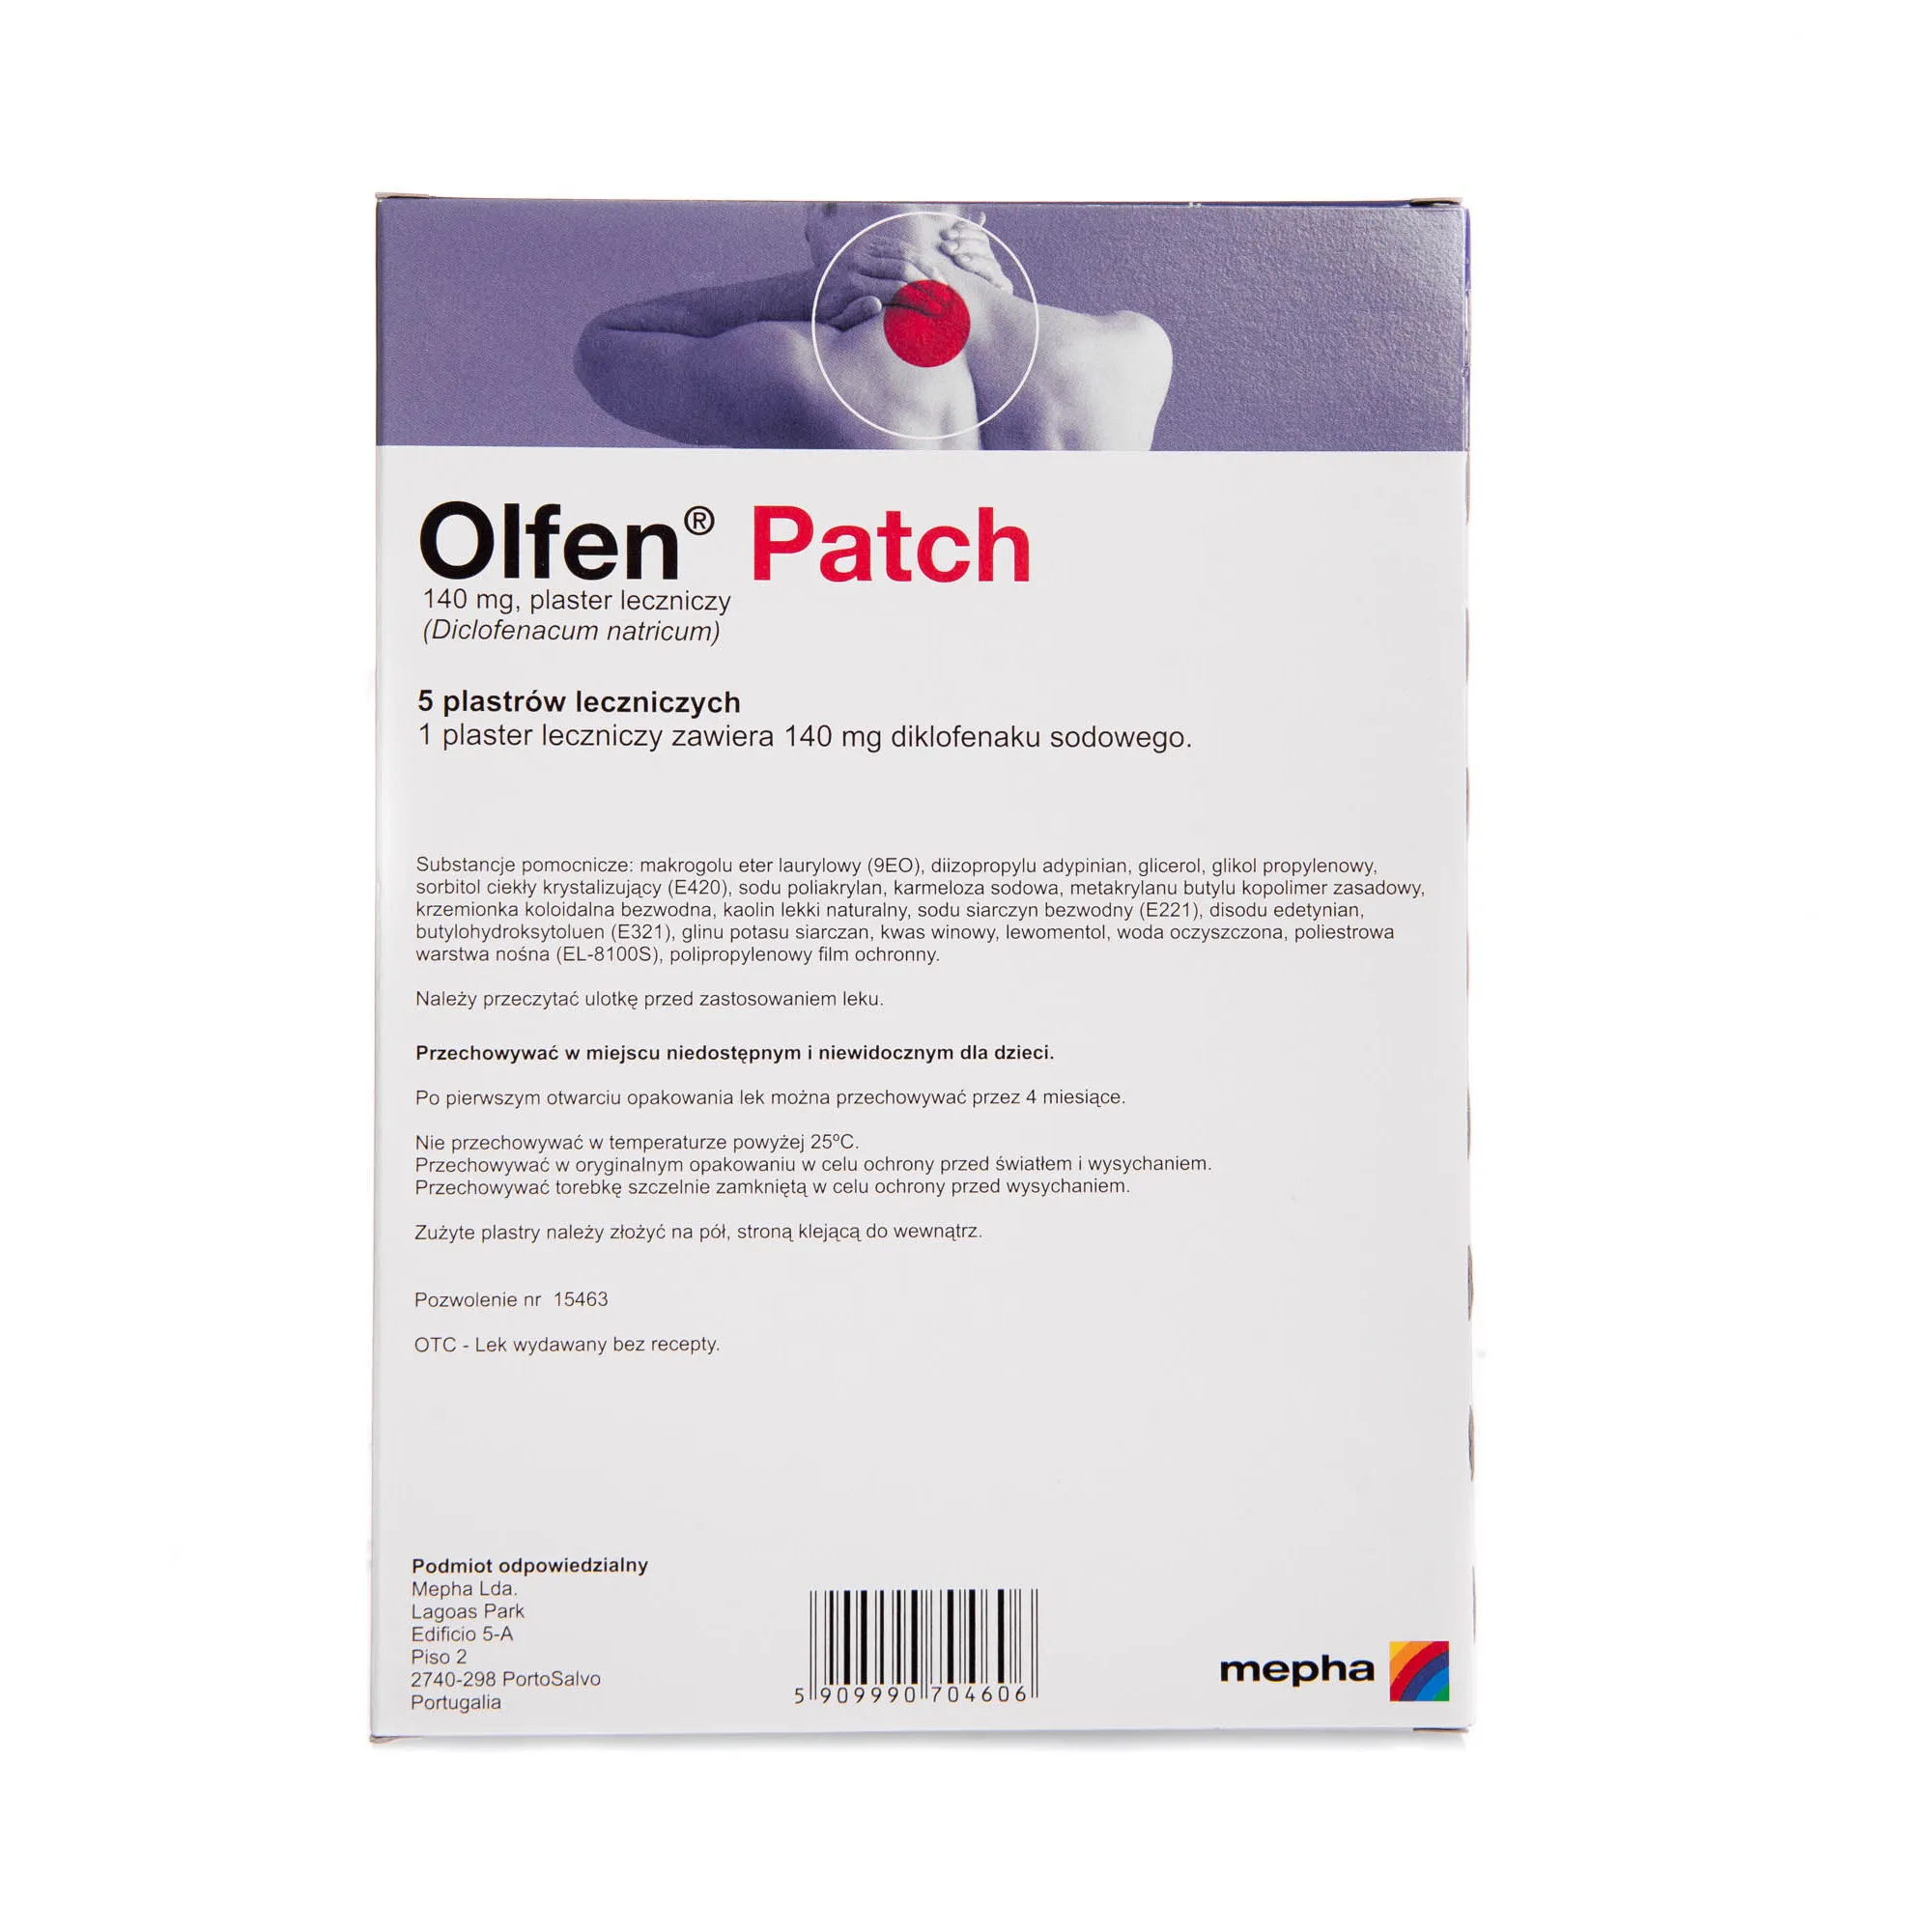 Olfen Patch, 140 mg, plaster leczniczy ( Diclofenacum natricum), 5 plastrów 